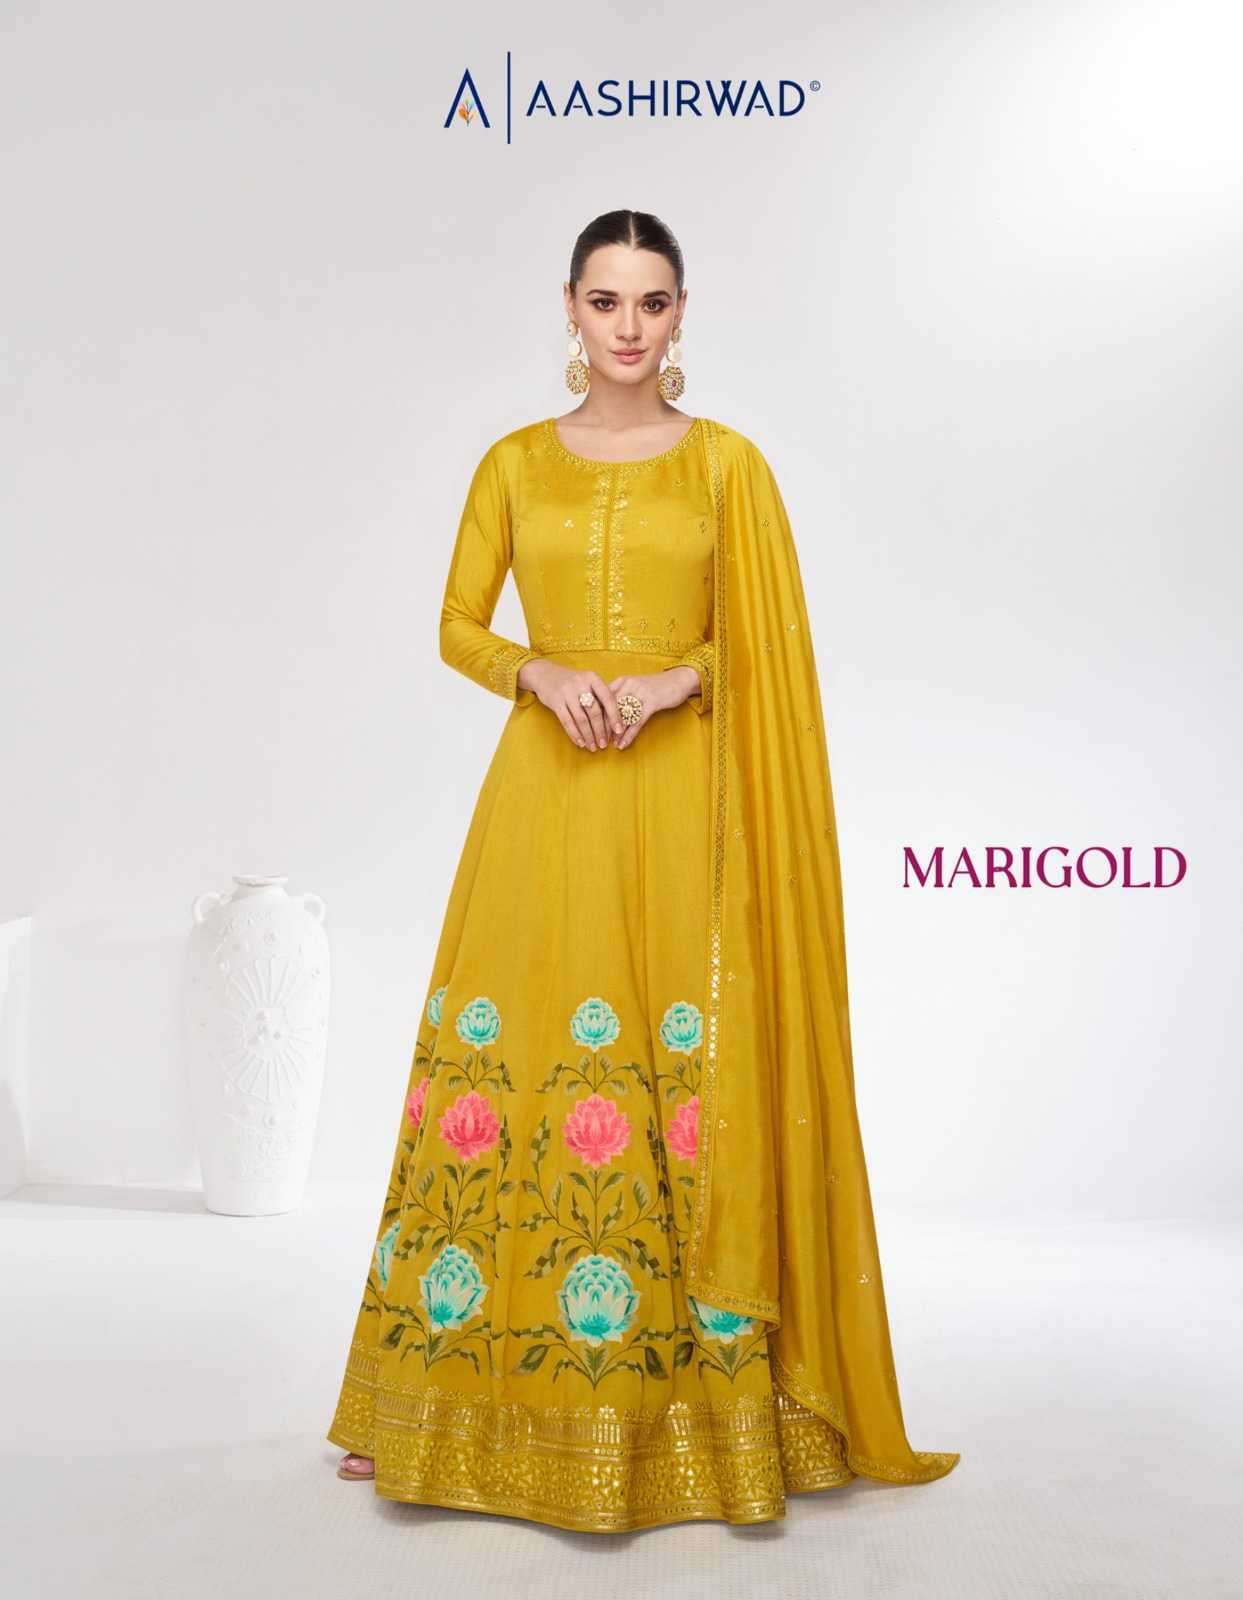 aashirwad marigold 9978-9979 premium silk gown with dupatta 